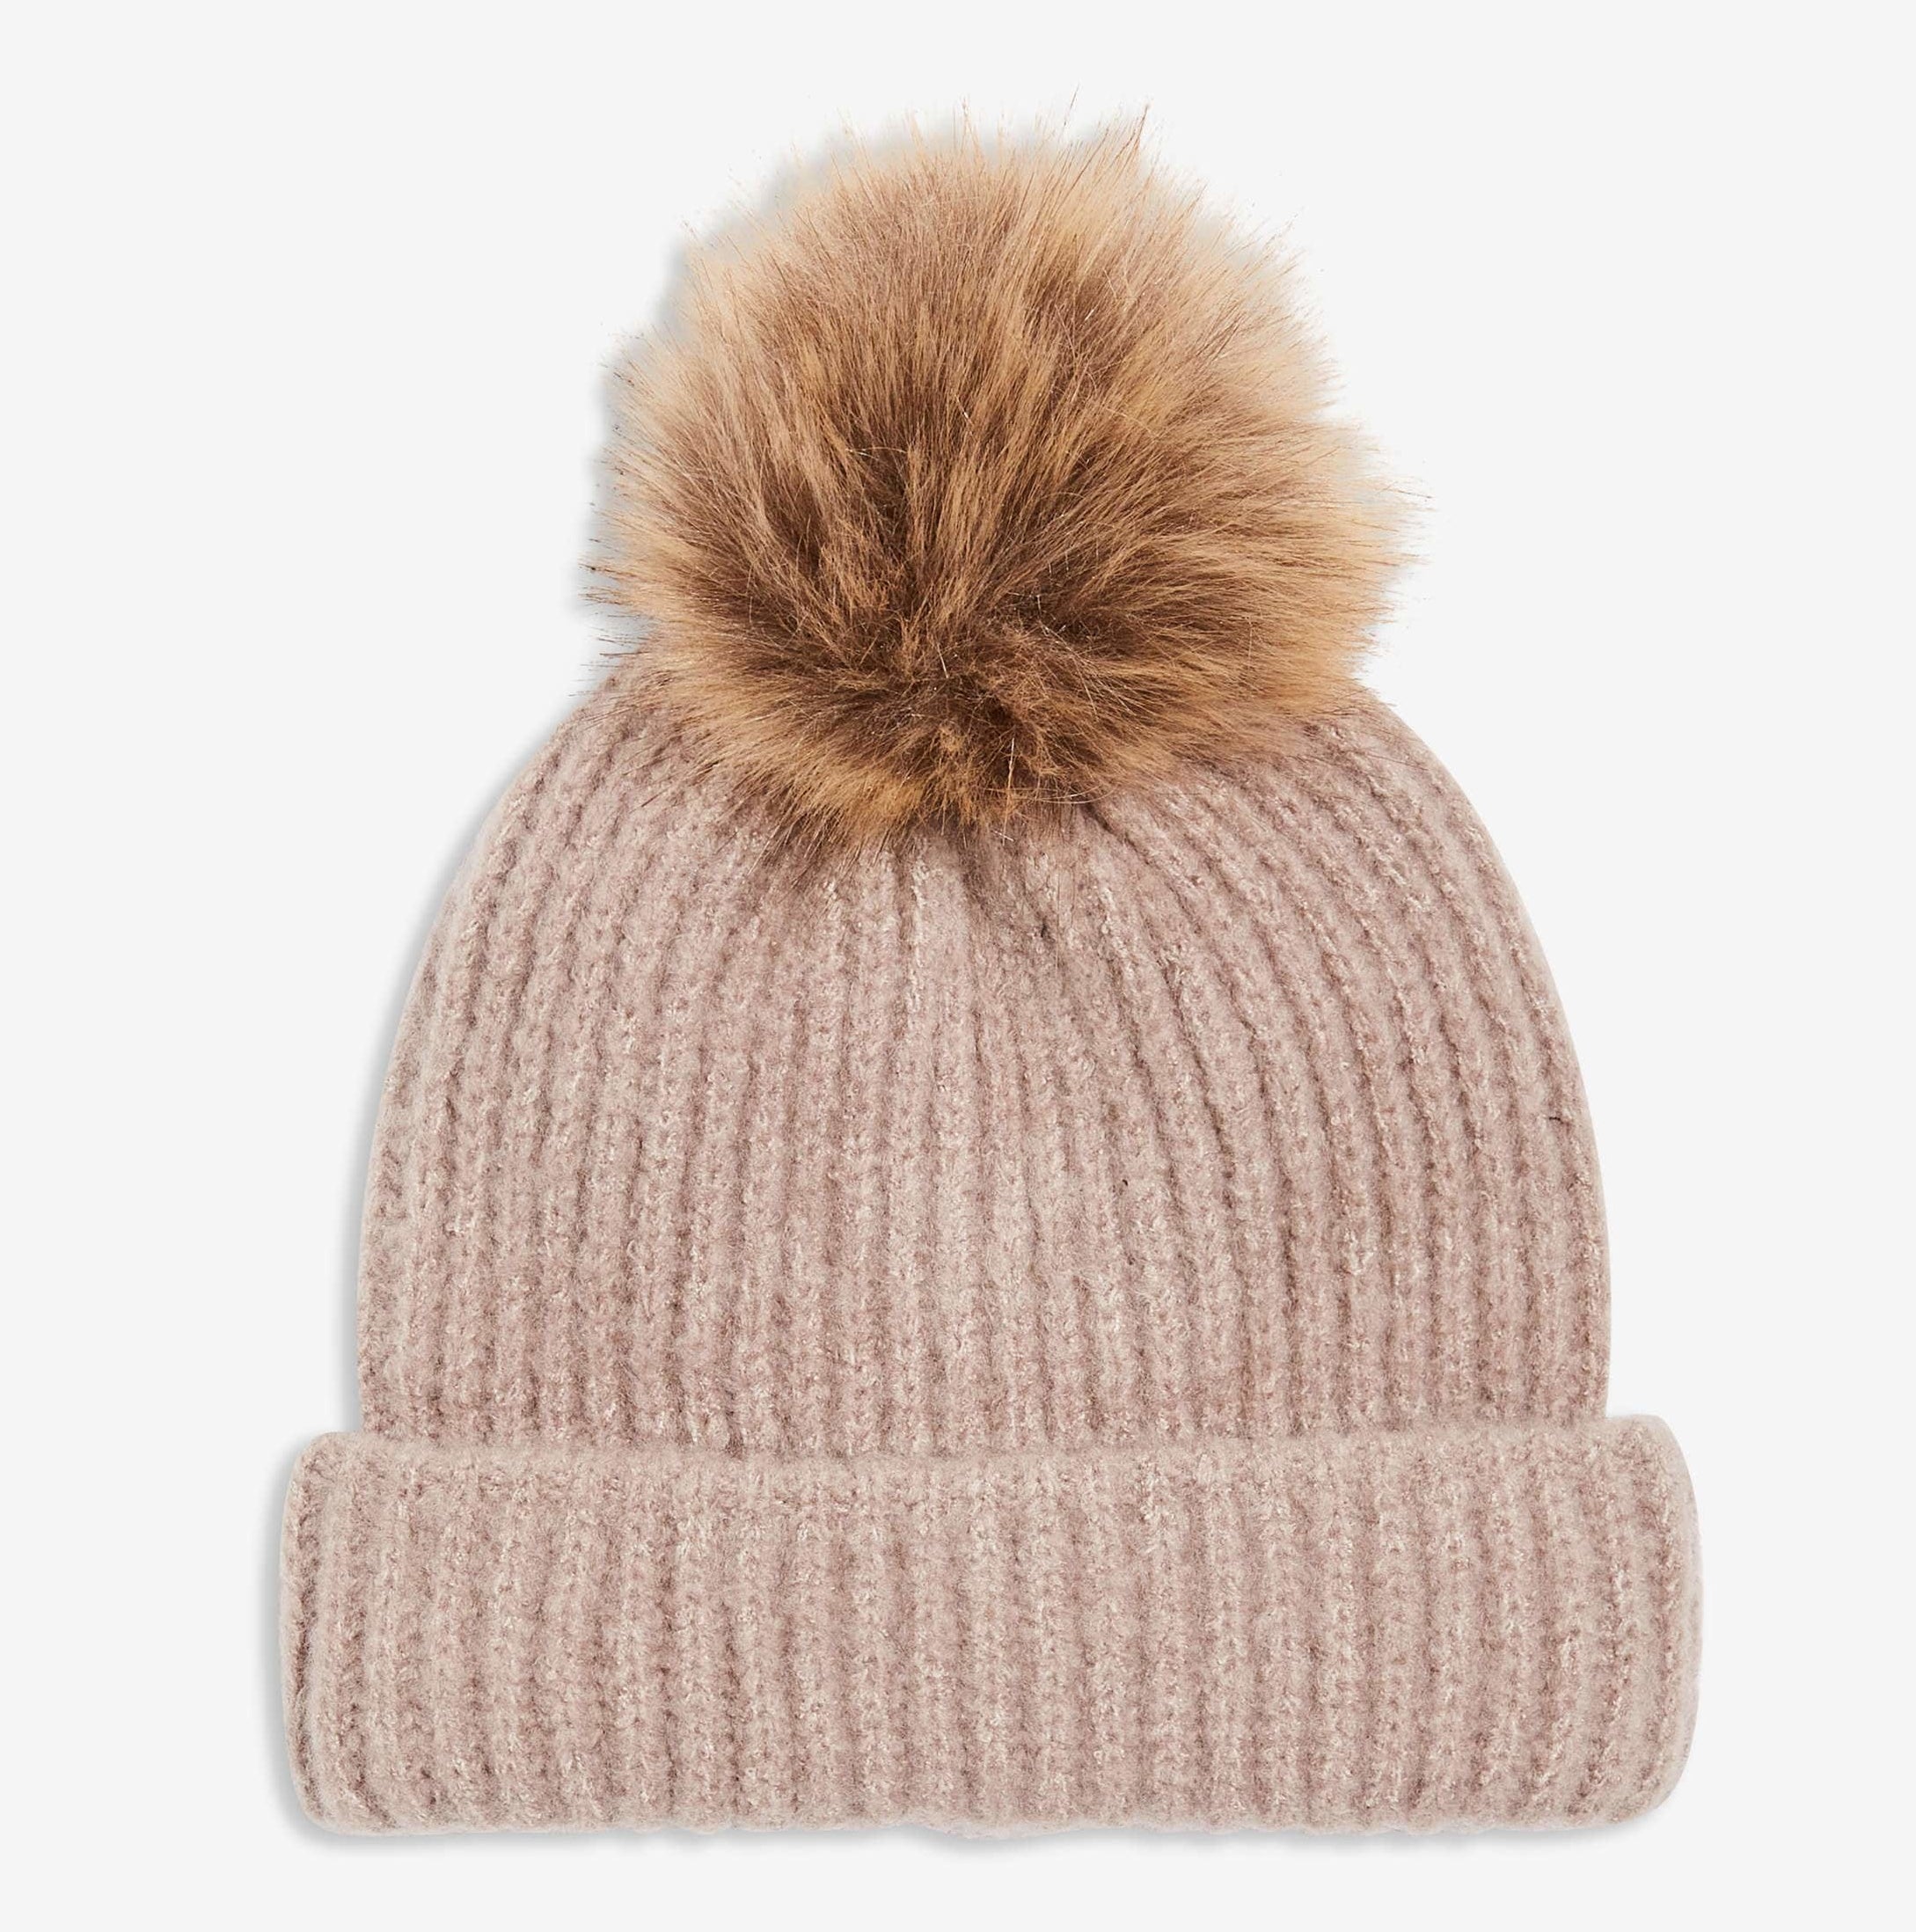 A beanie hat with a furry pom pom on top